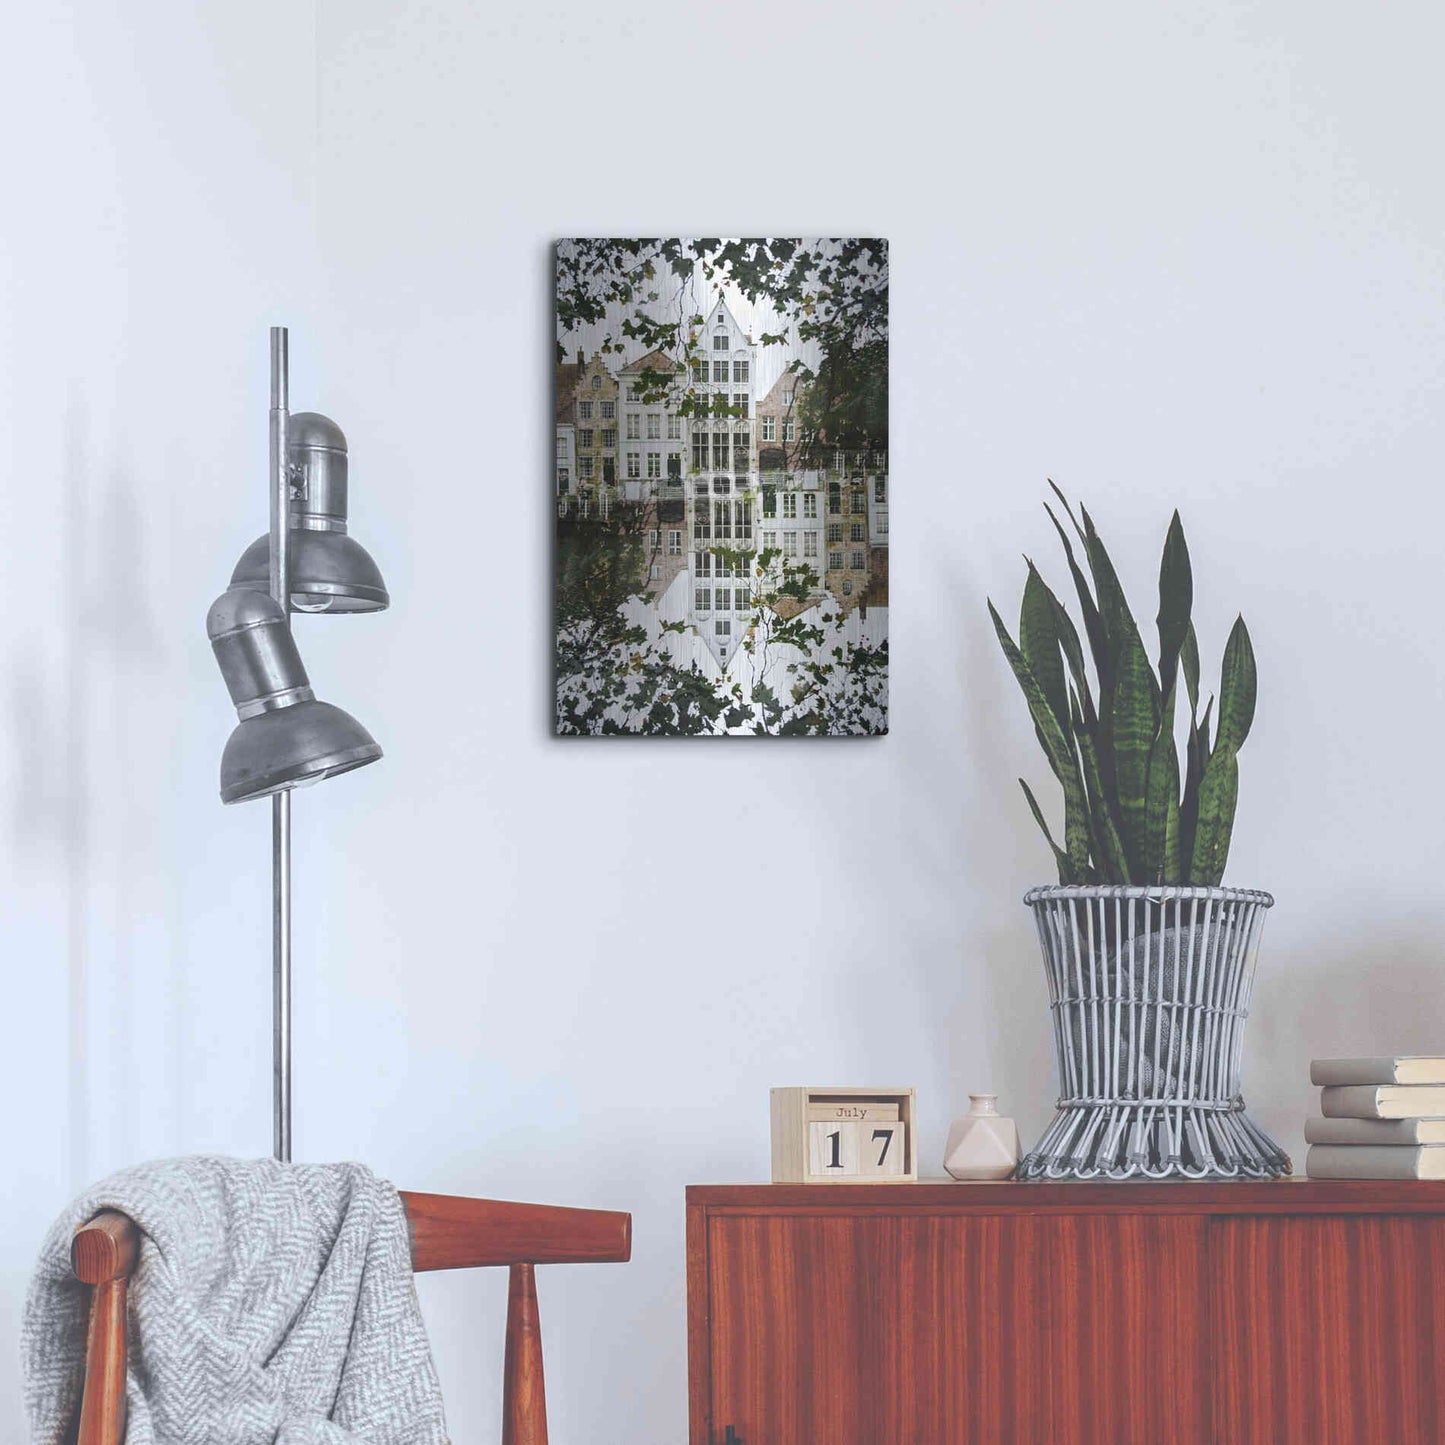 Luxe Metal Art ' Bruges 204' by Robin Vandenabeele, Metal Wall Art,16x24